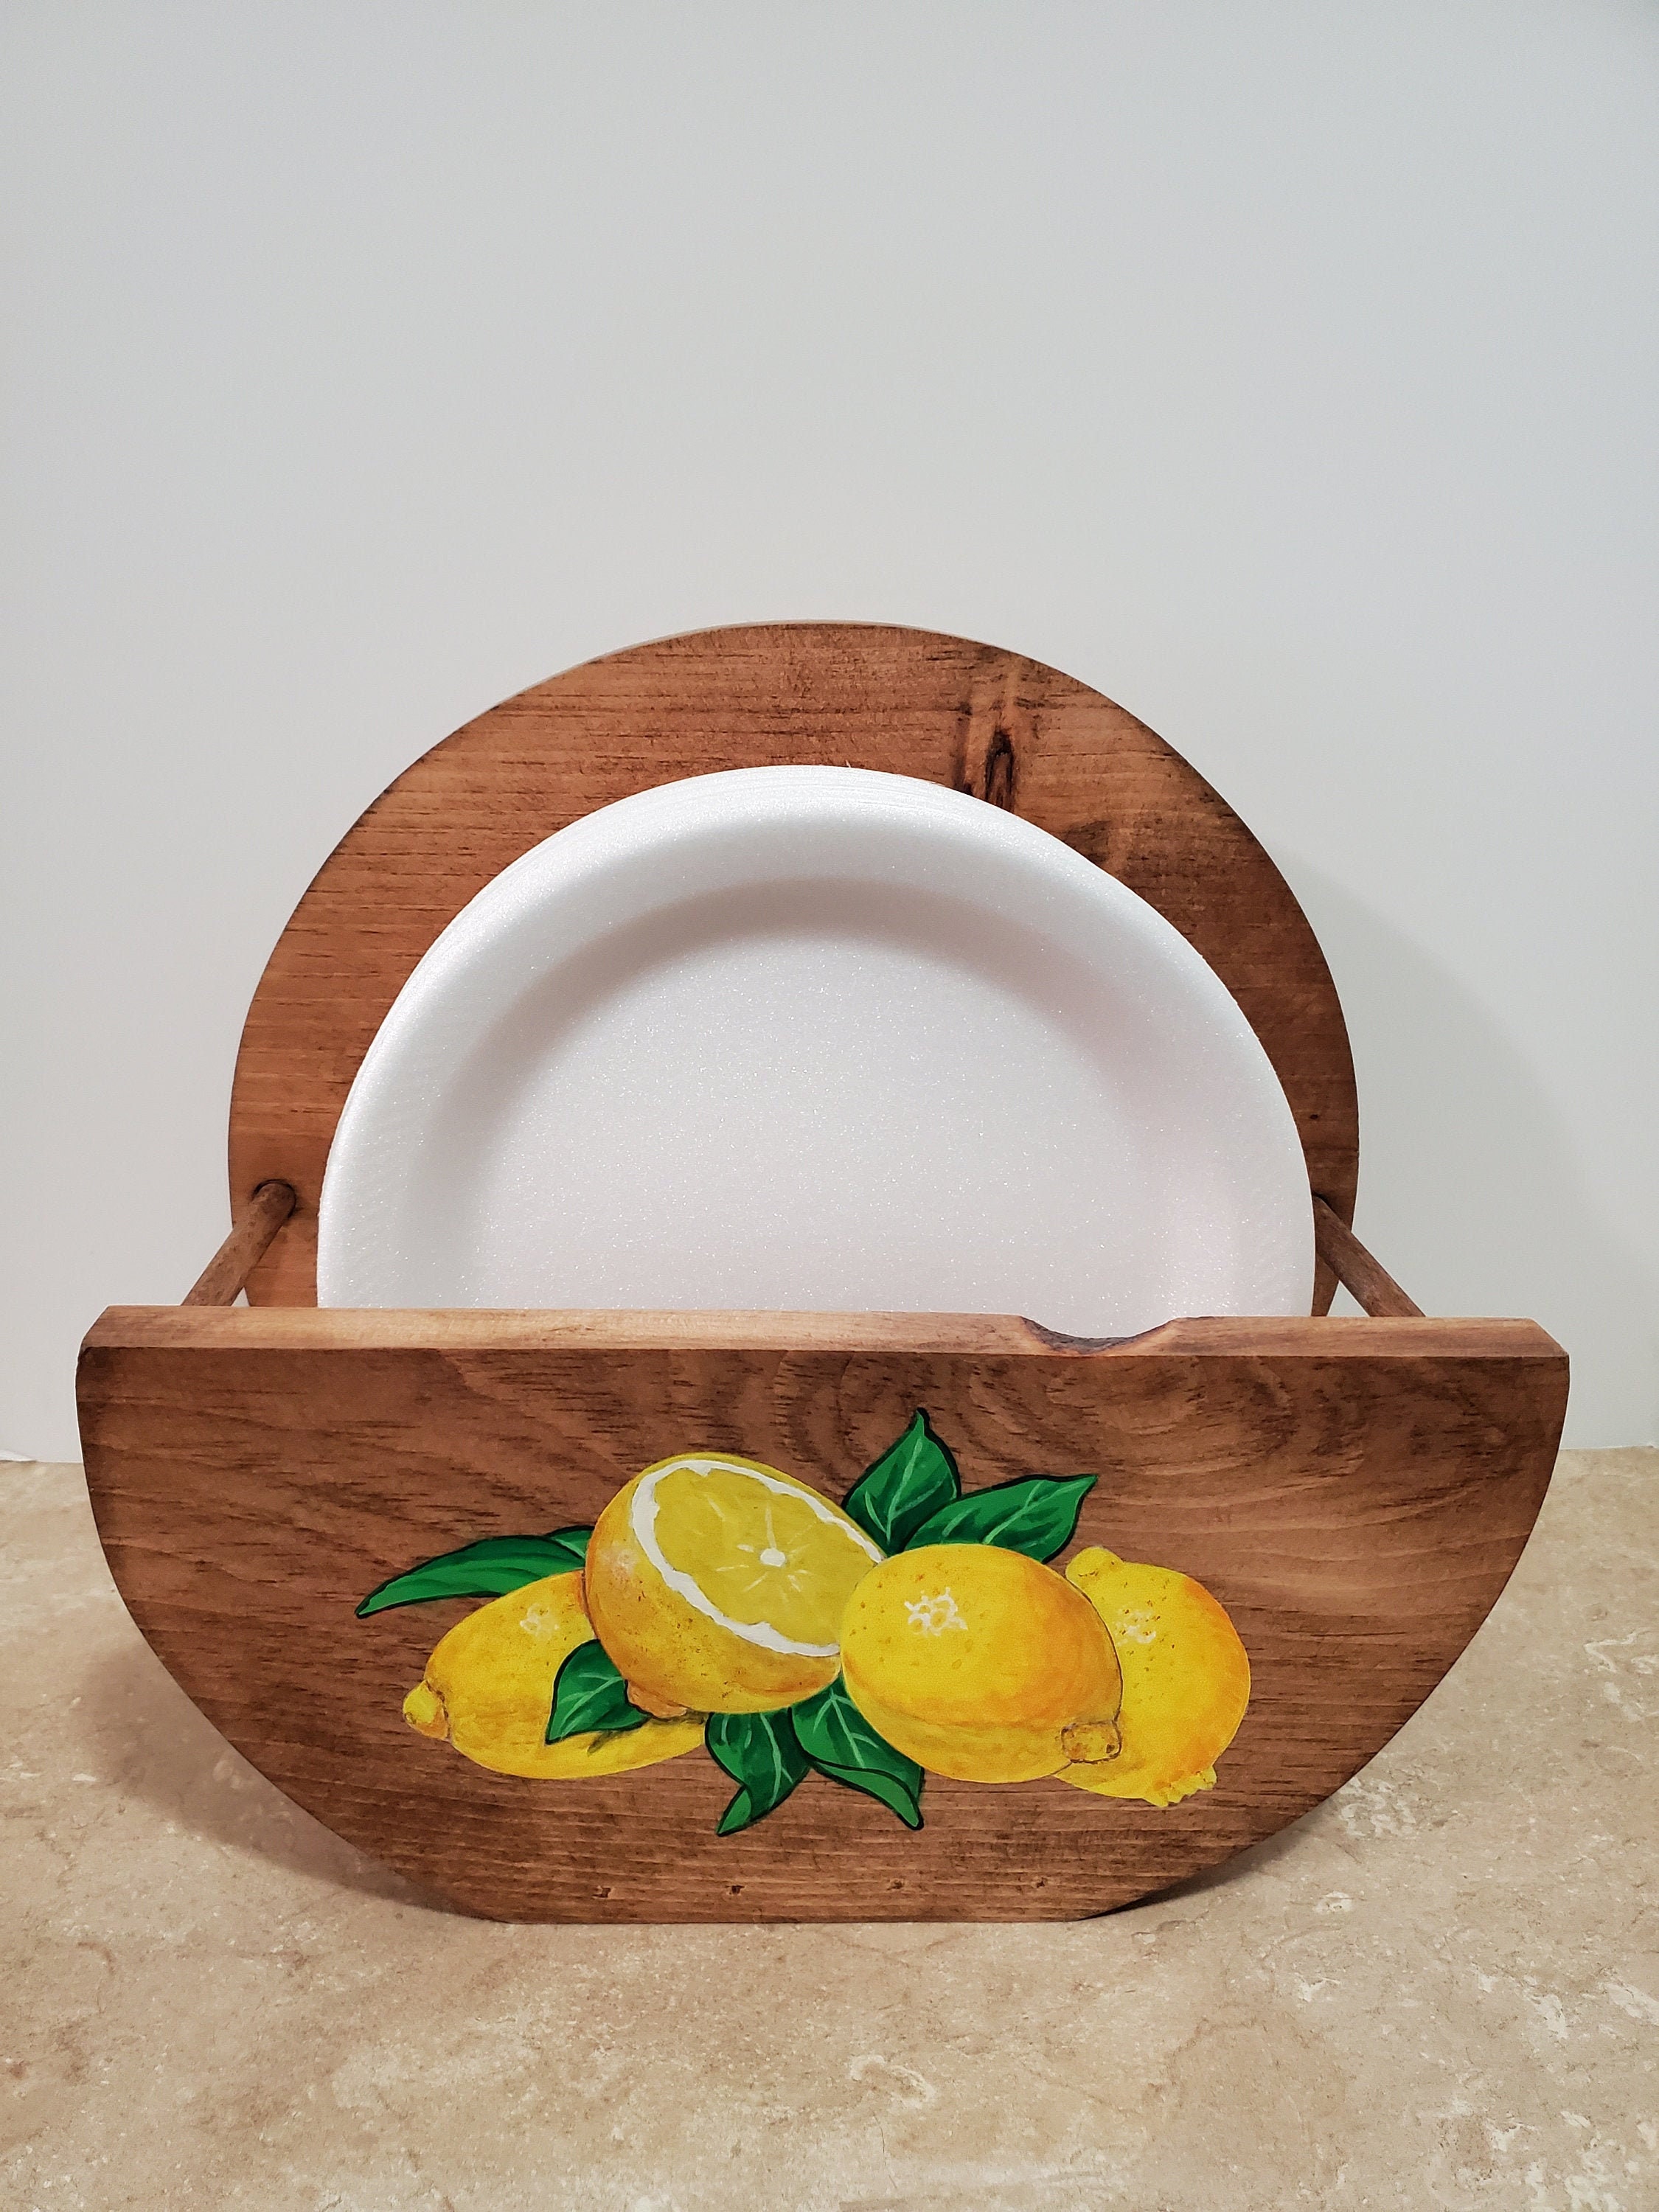 Paper Plate Holder,Wooden plate holder,Lemon Kitchen Decor,Hand painted  lemons,Country Decor,Housewarming gift,yellow lemon decor